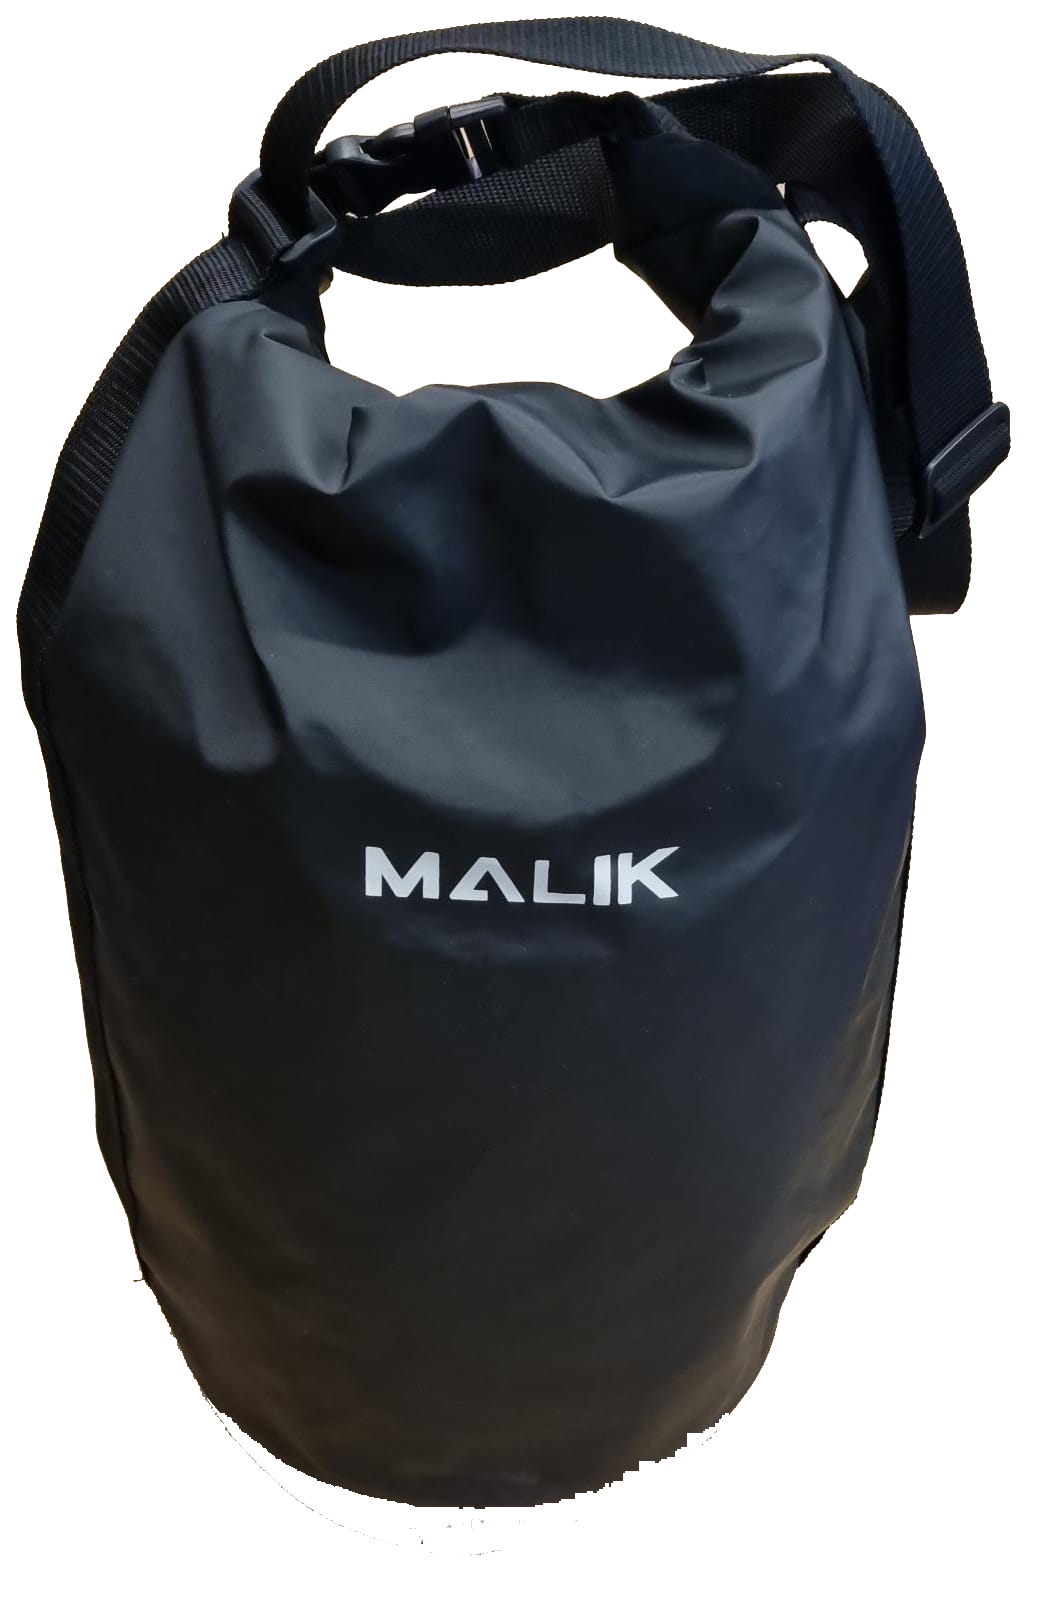 MALIK - Ball Bag